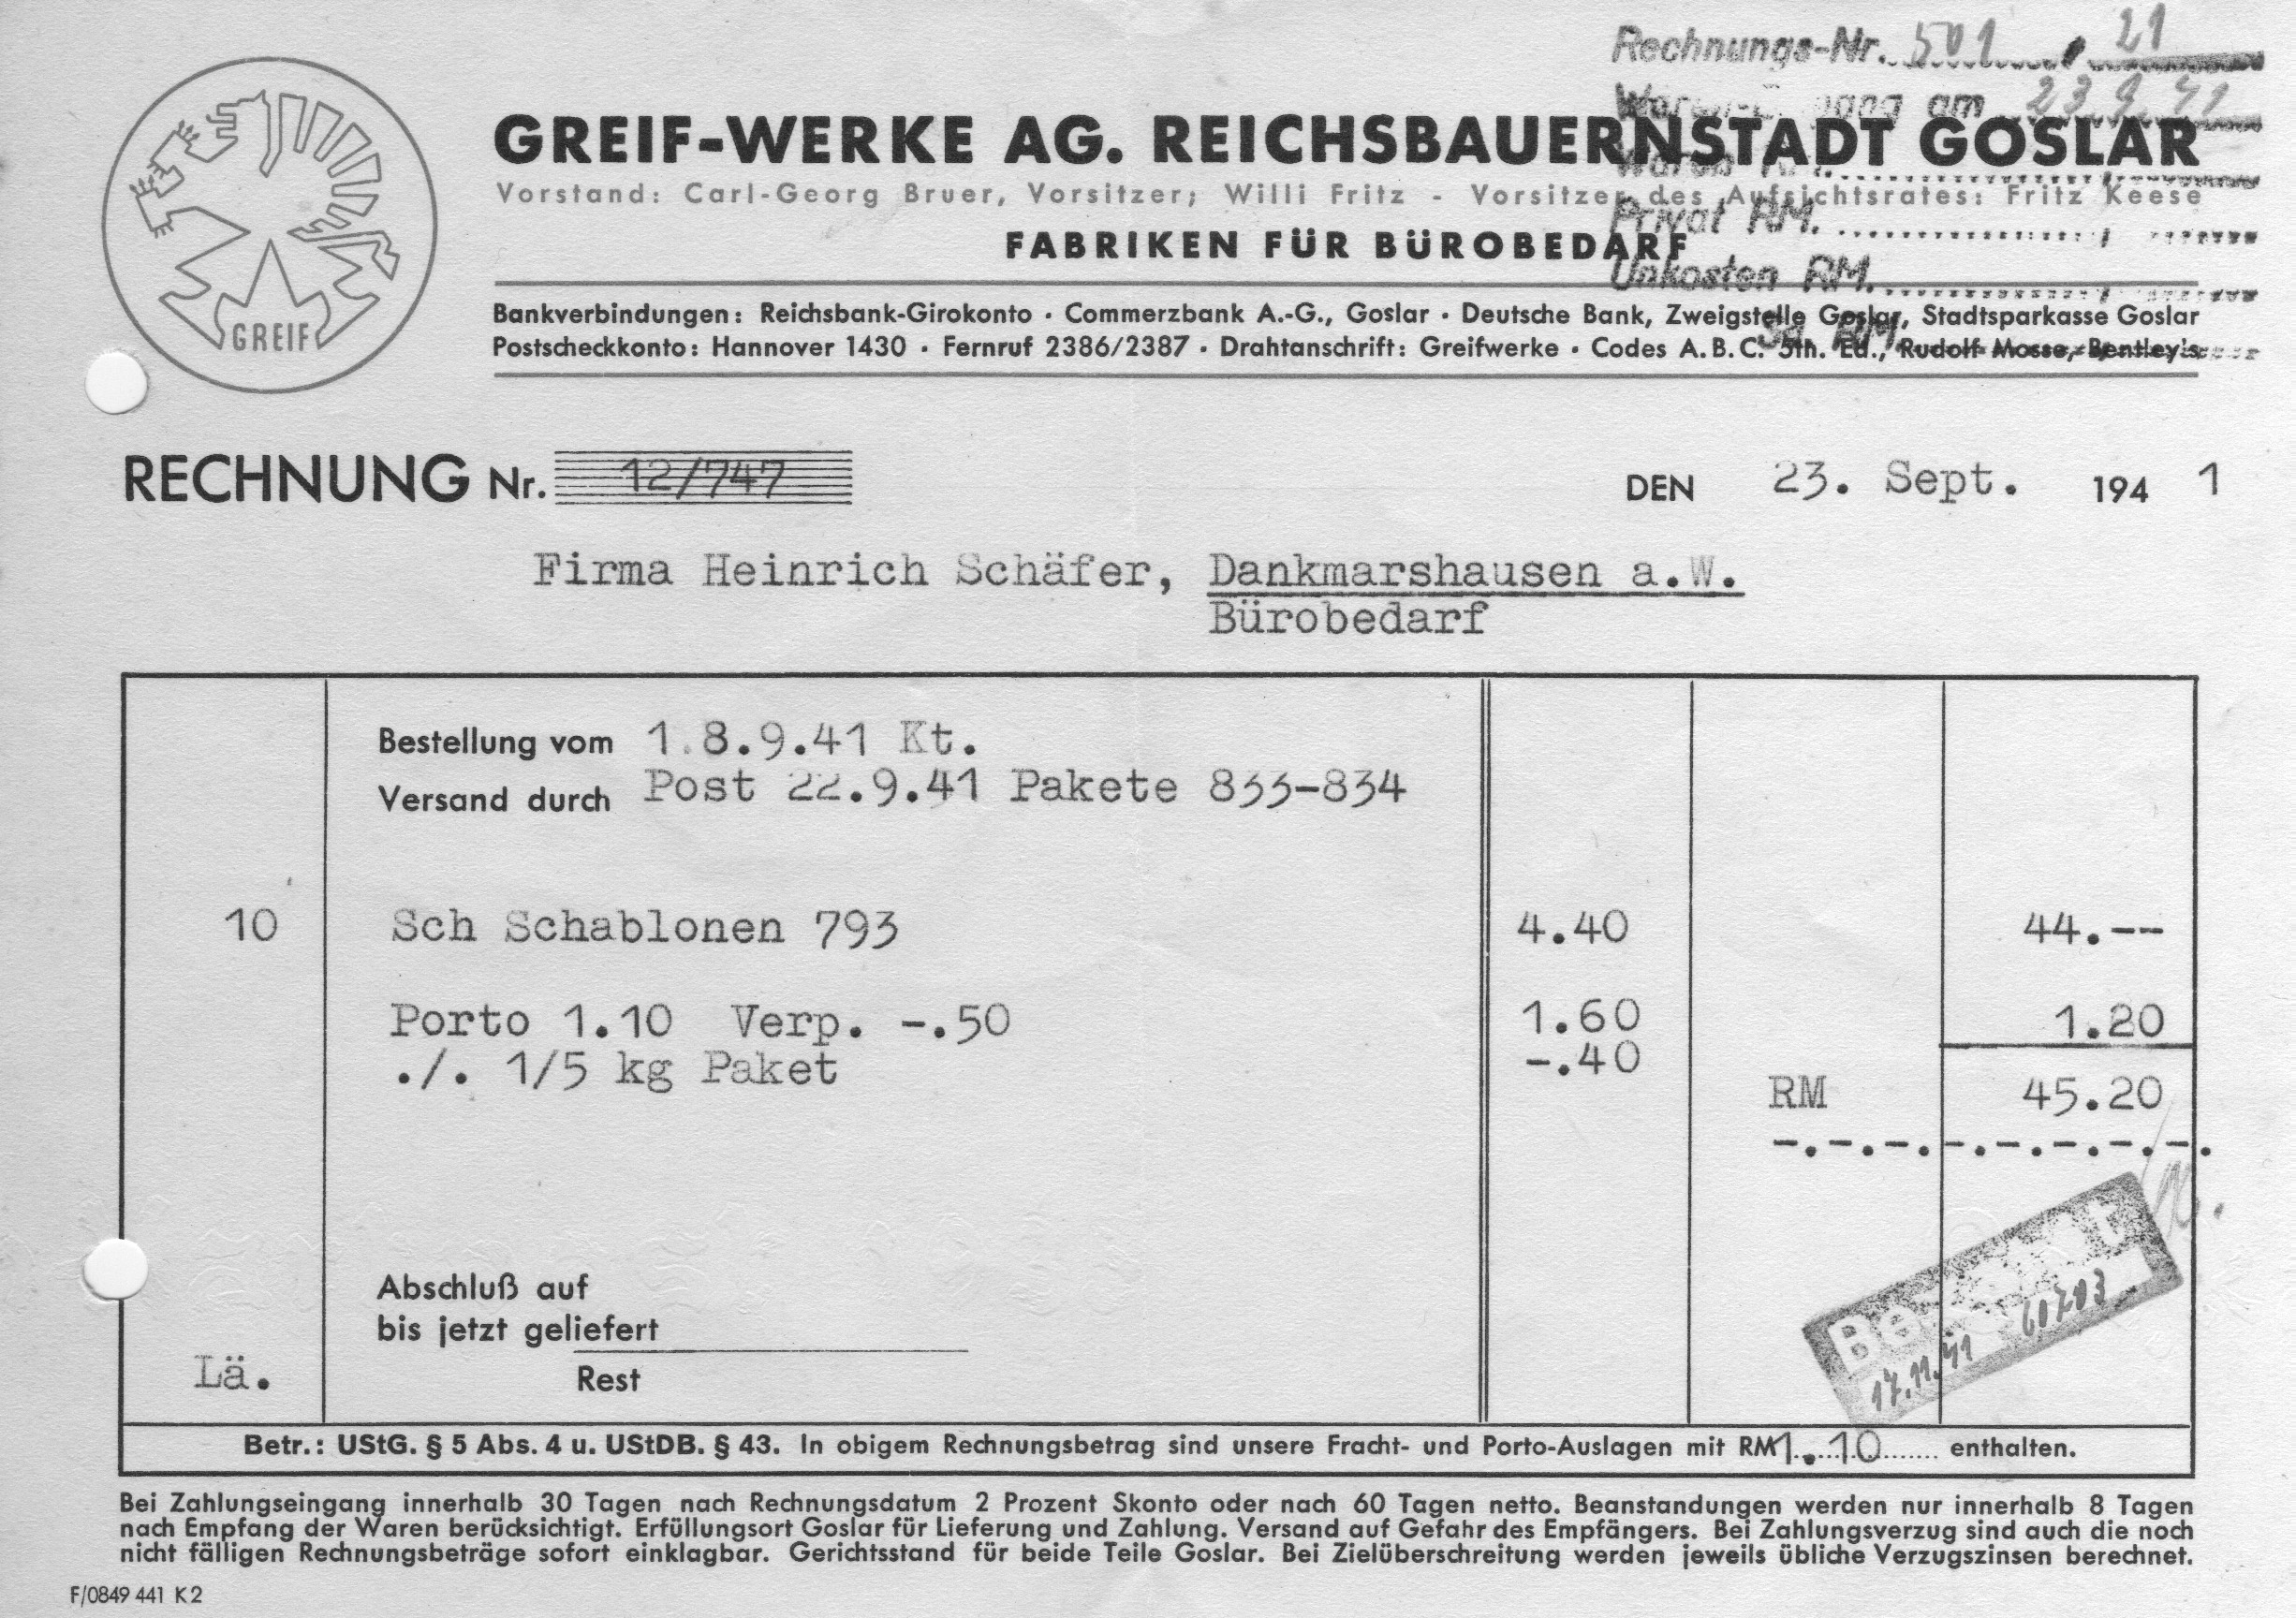 Vergleichs-Rechnung Greif-Werke AG vom 23.9.1941, gekauft wurden 10 Schachteln Schablonen à 10 Stück zu 44.- RM, Stückpreis 44 Pf., Privatbesitz